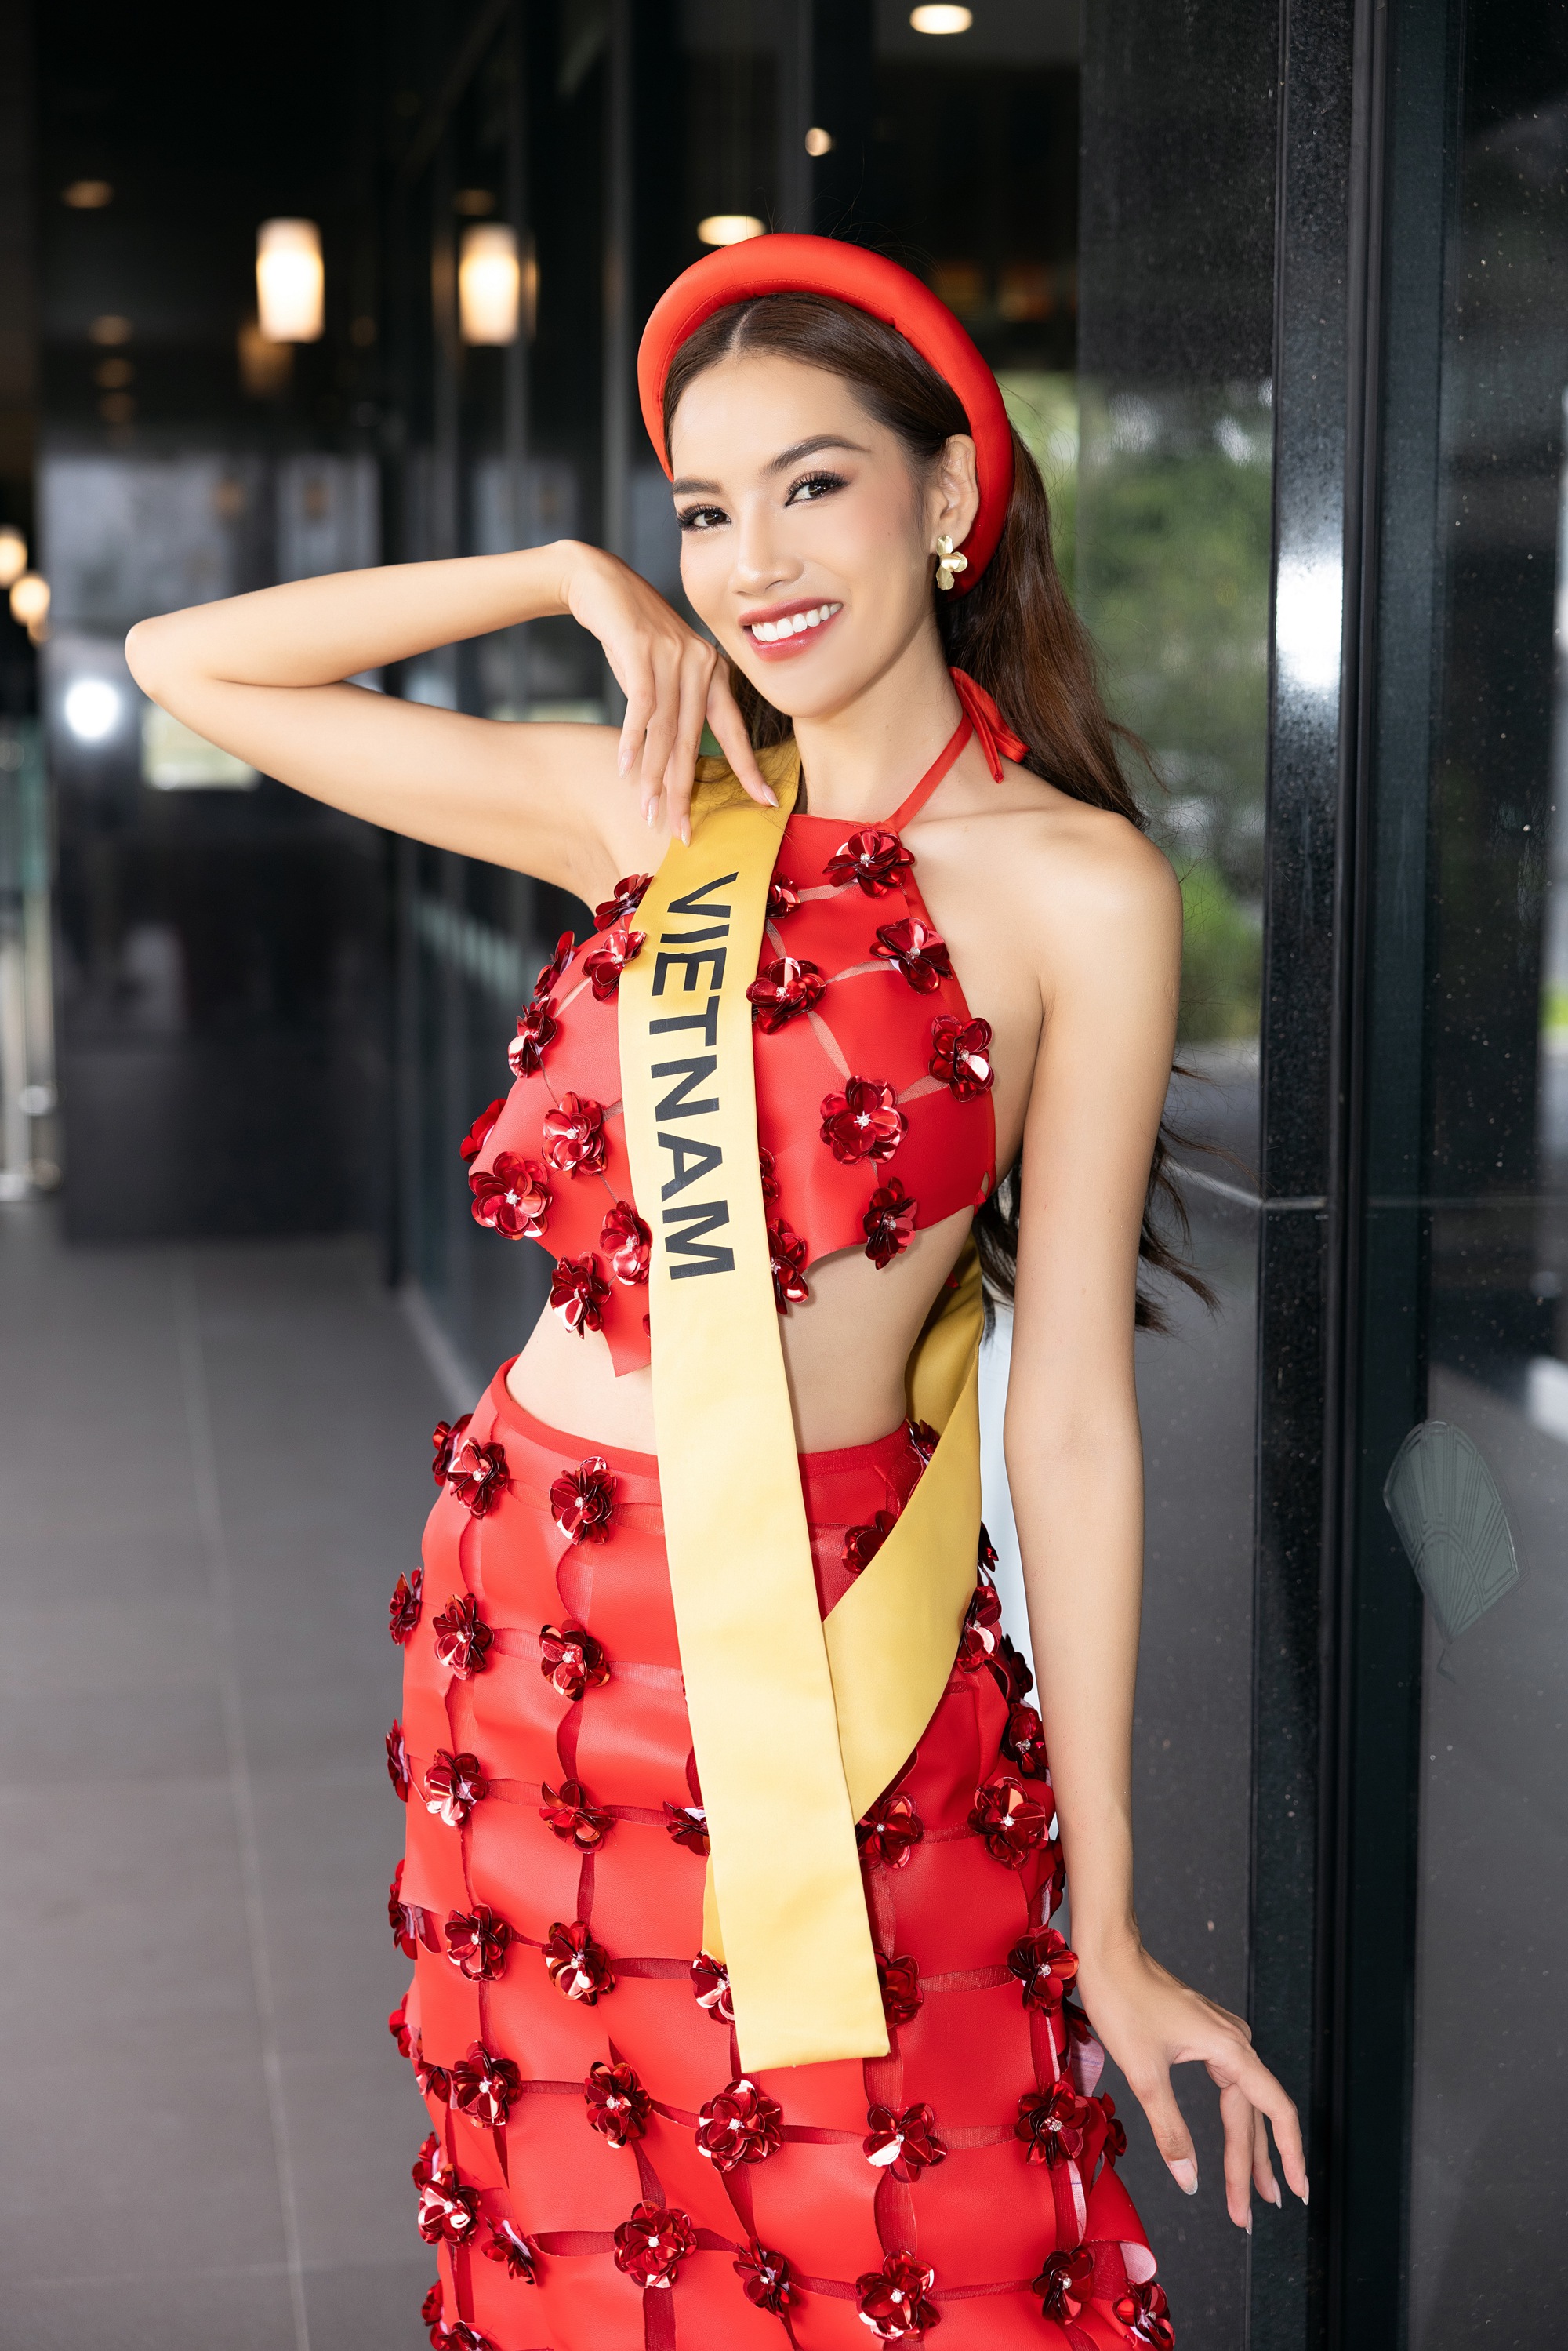 Phía Miss Grand Vietnam trả lời đã hoàn thiện nội dung hợp đồng với Nam An - Ảnh 2.